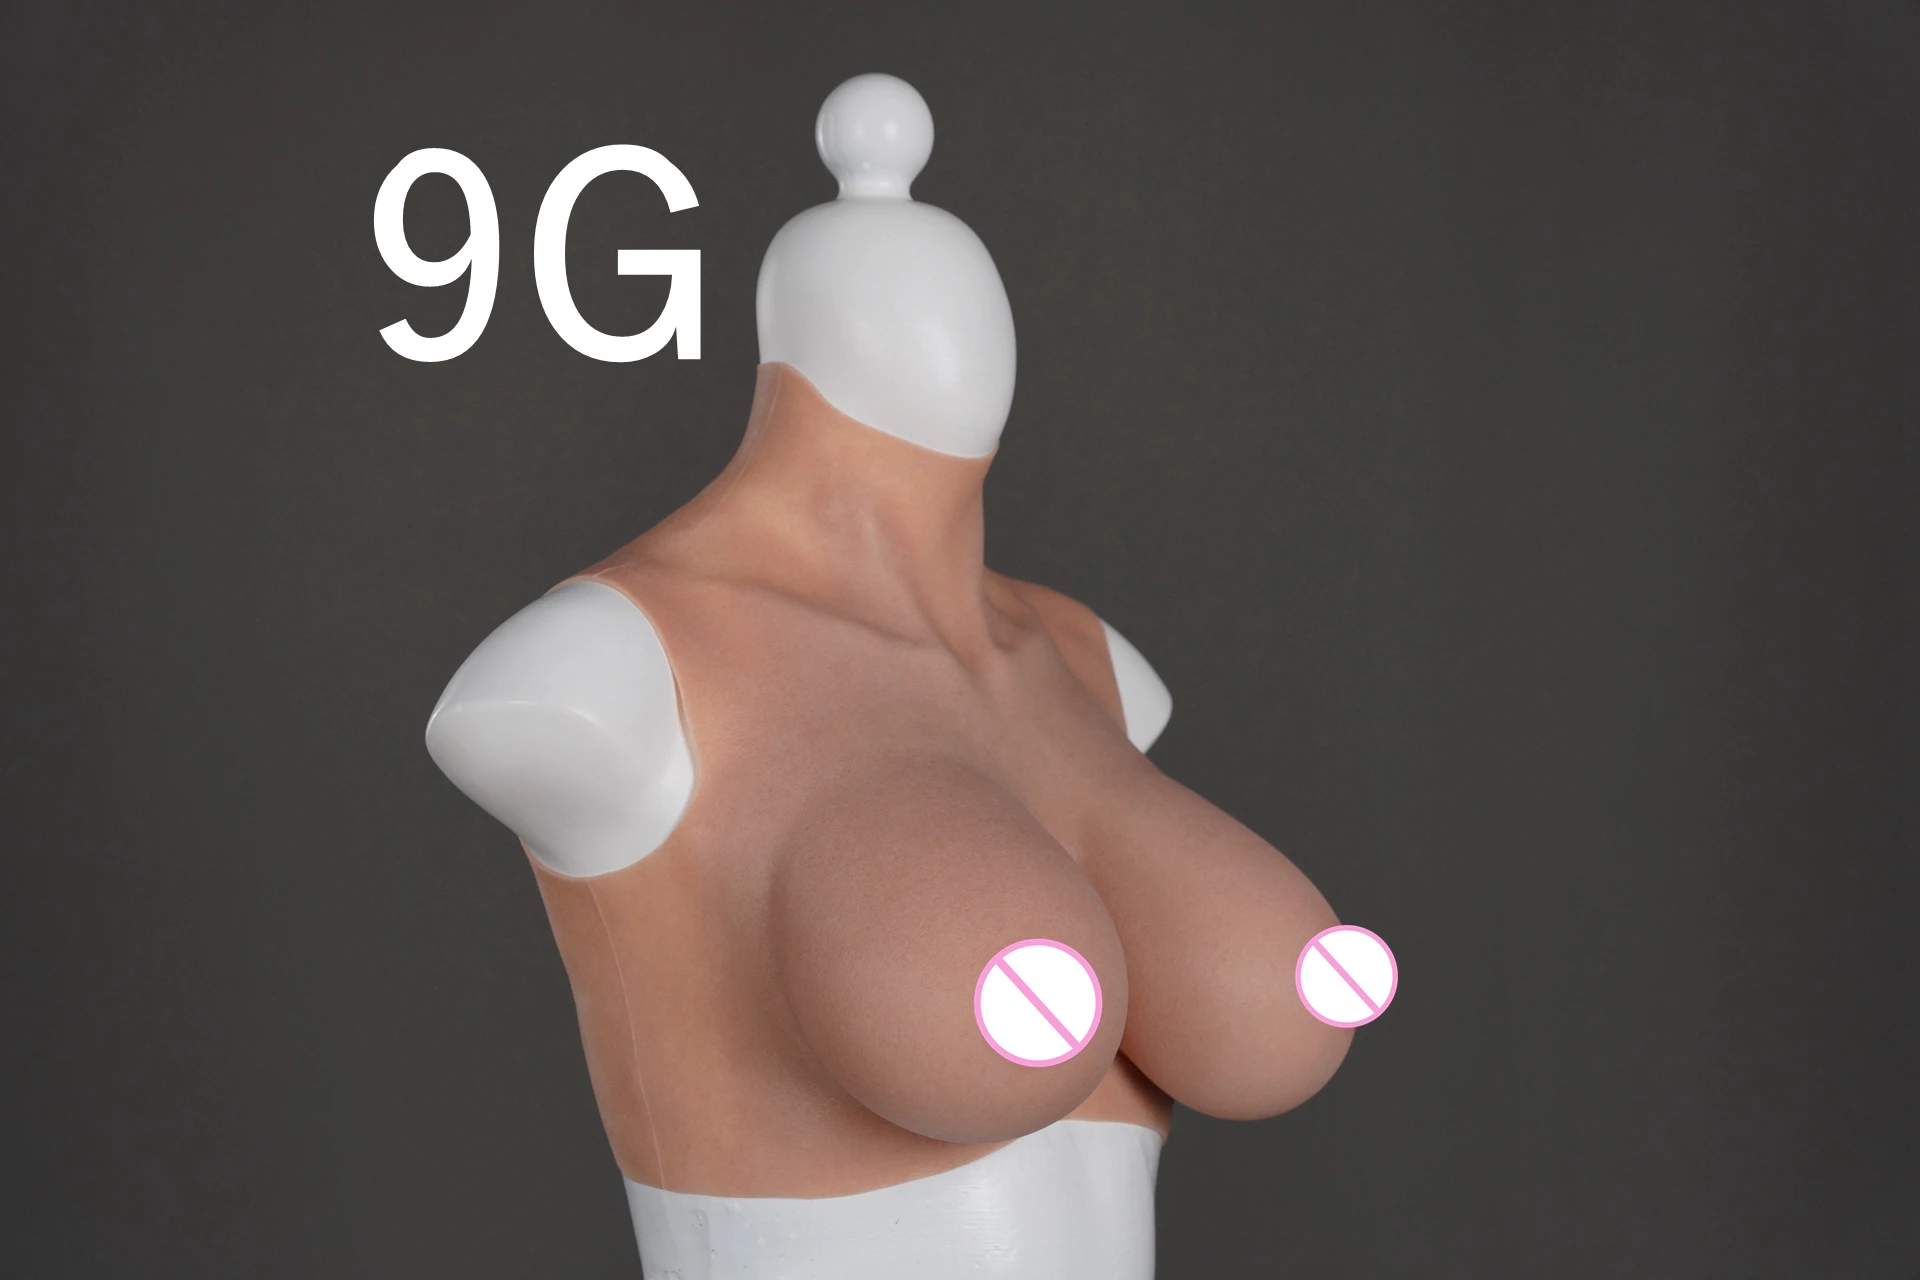 реалистичная силиконовая грудь фото 97